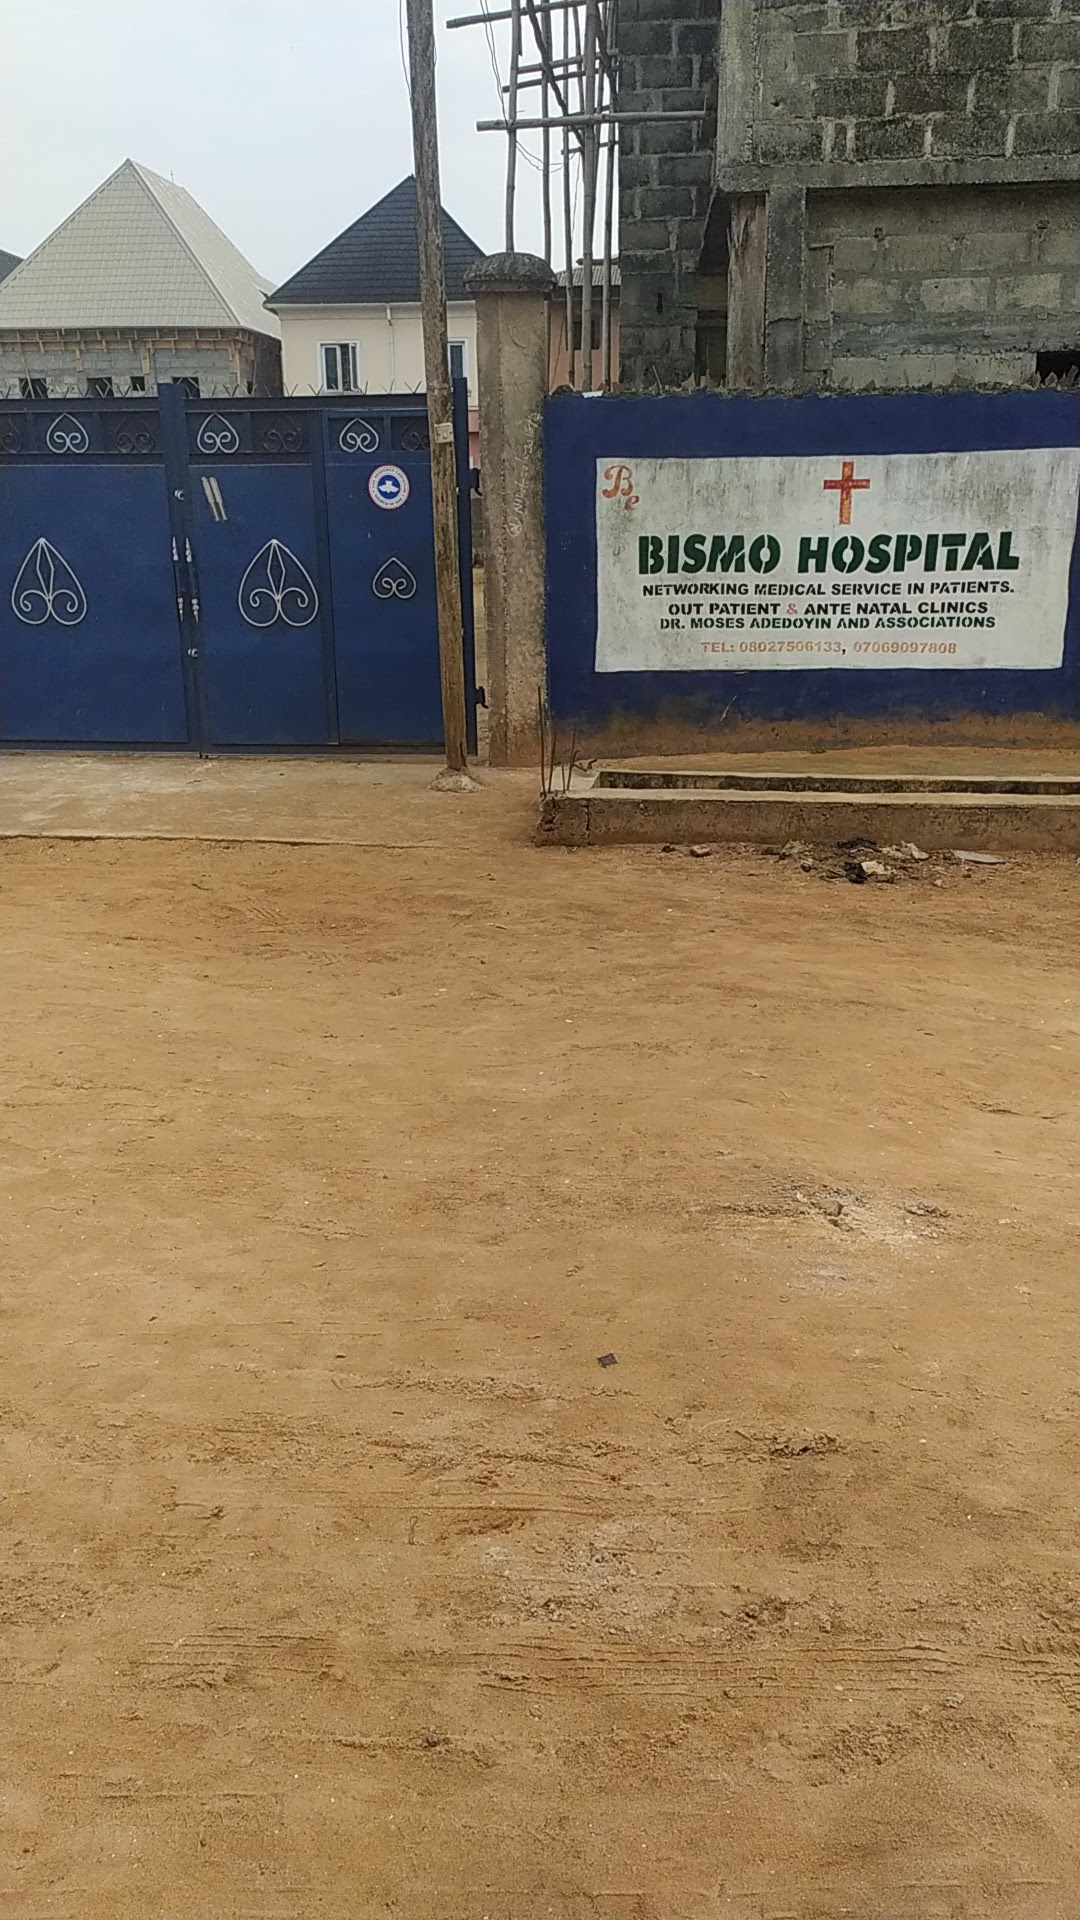 Bismo hospital